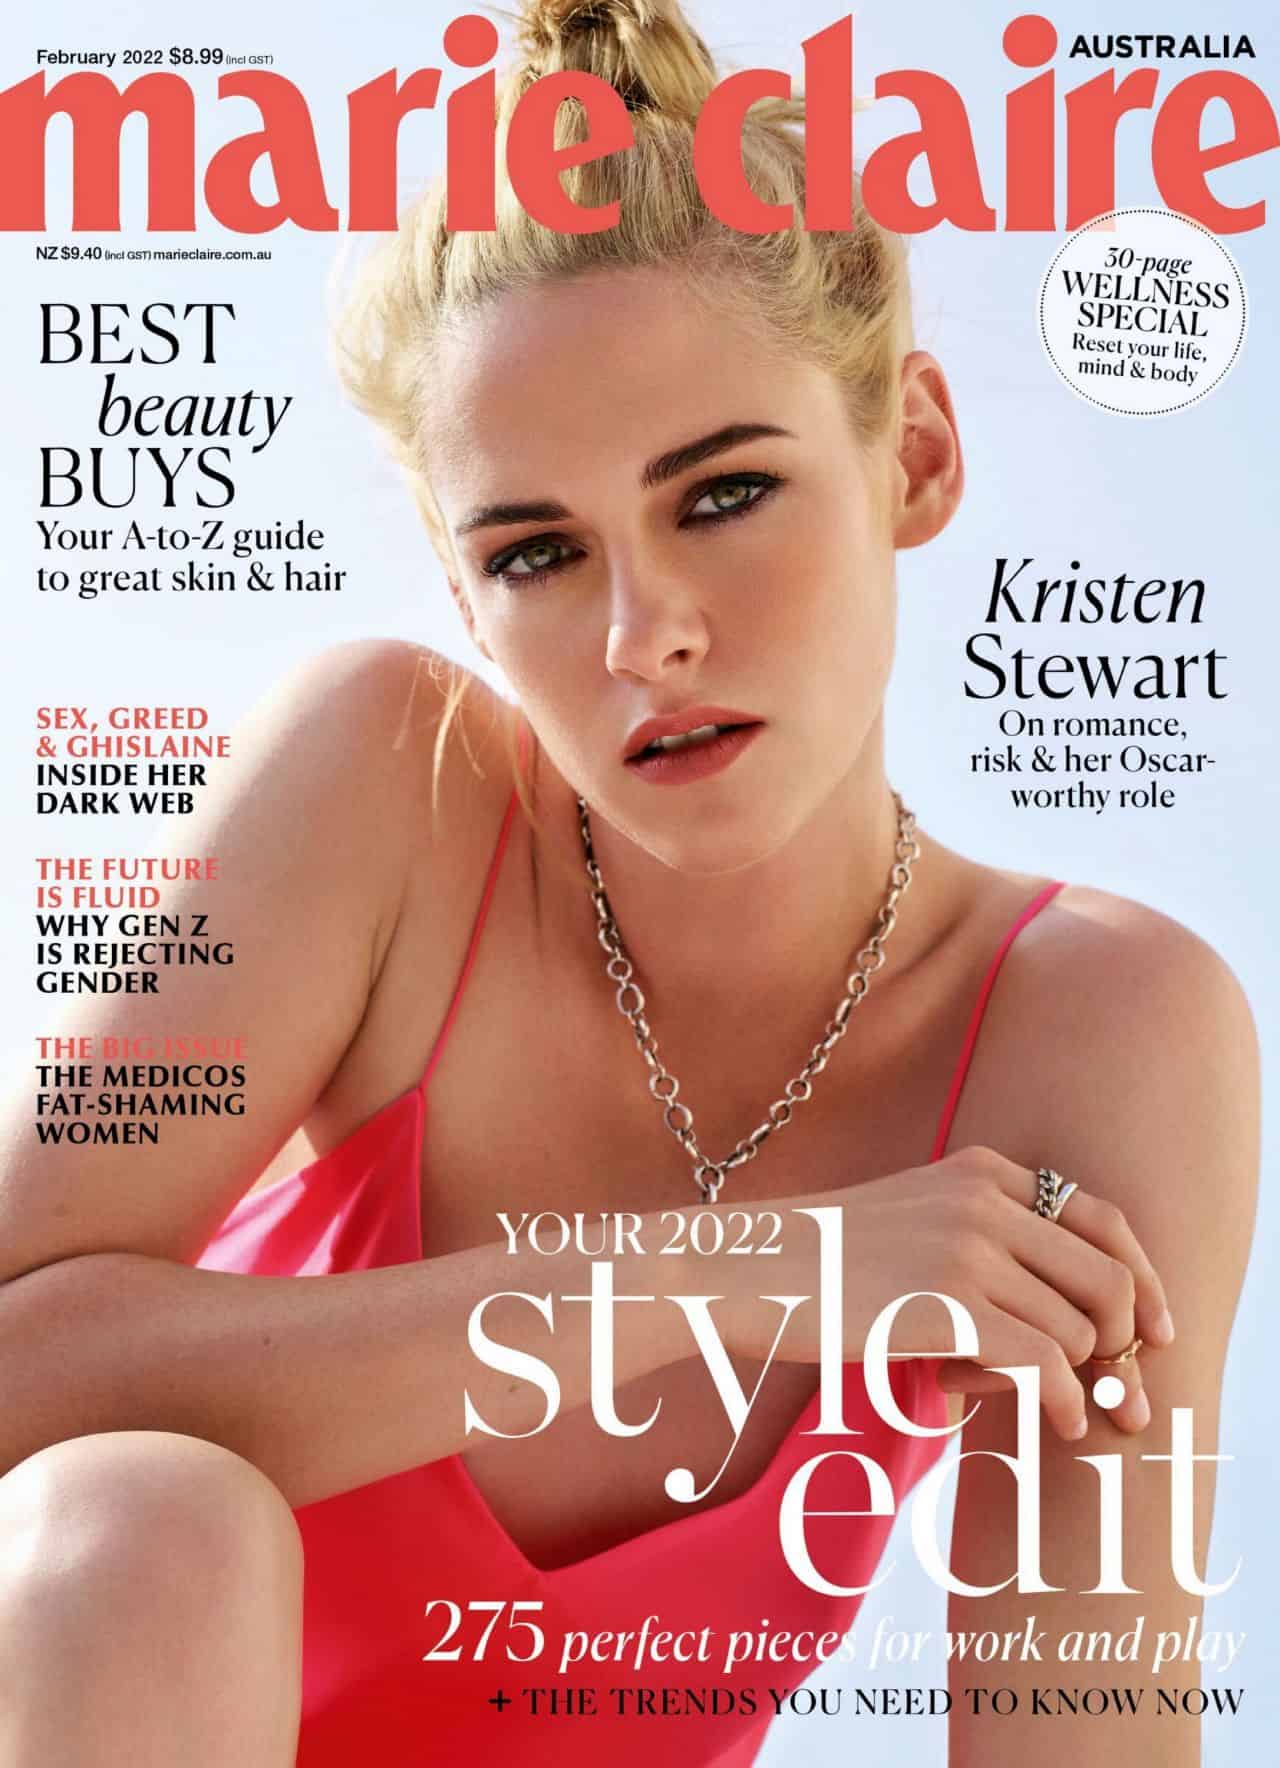 Kristen Stewart in Marie Claire Australia Magazine February 2022 Issue